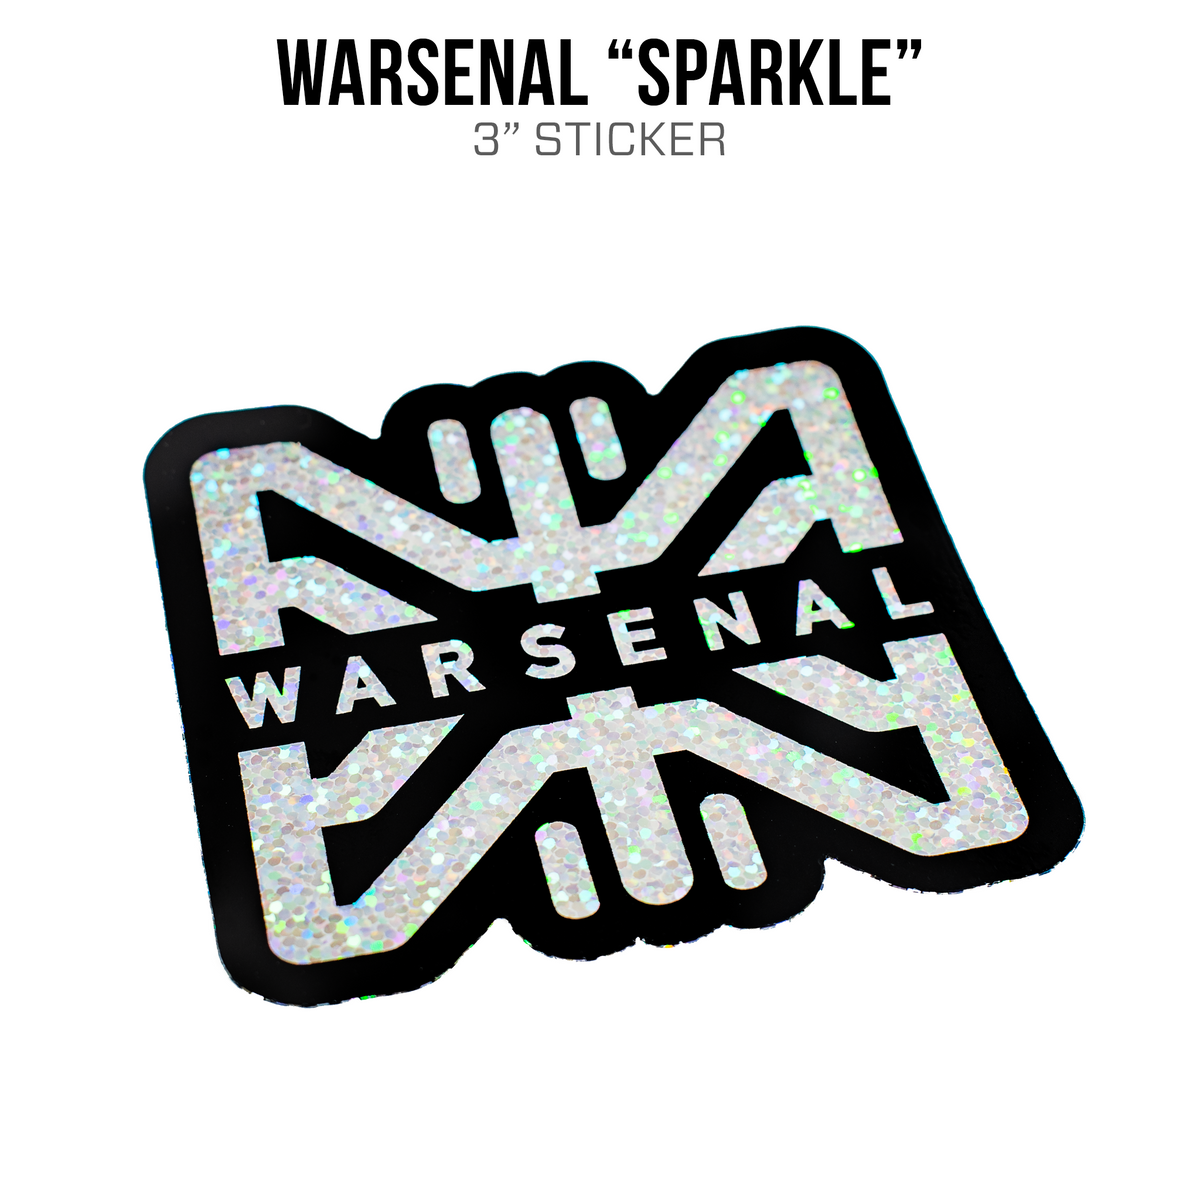 Warsenal Sparkle Sticker